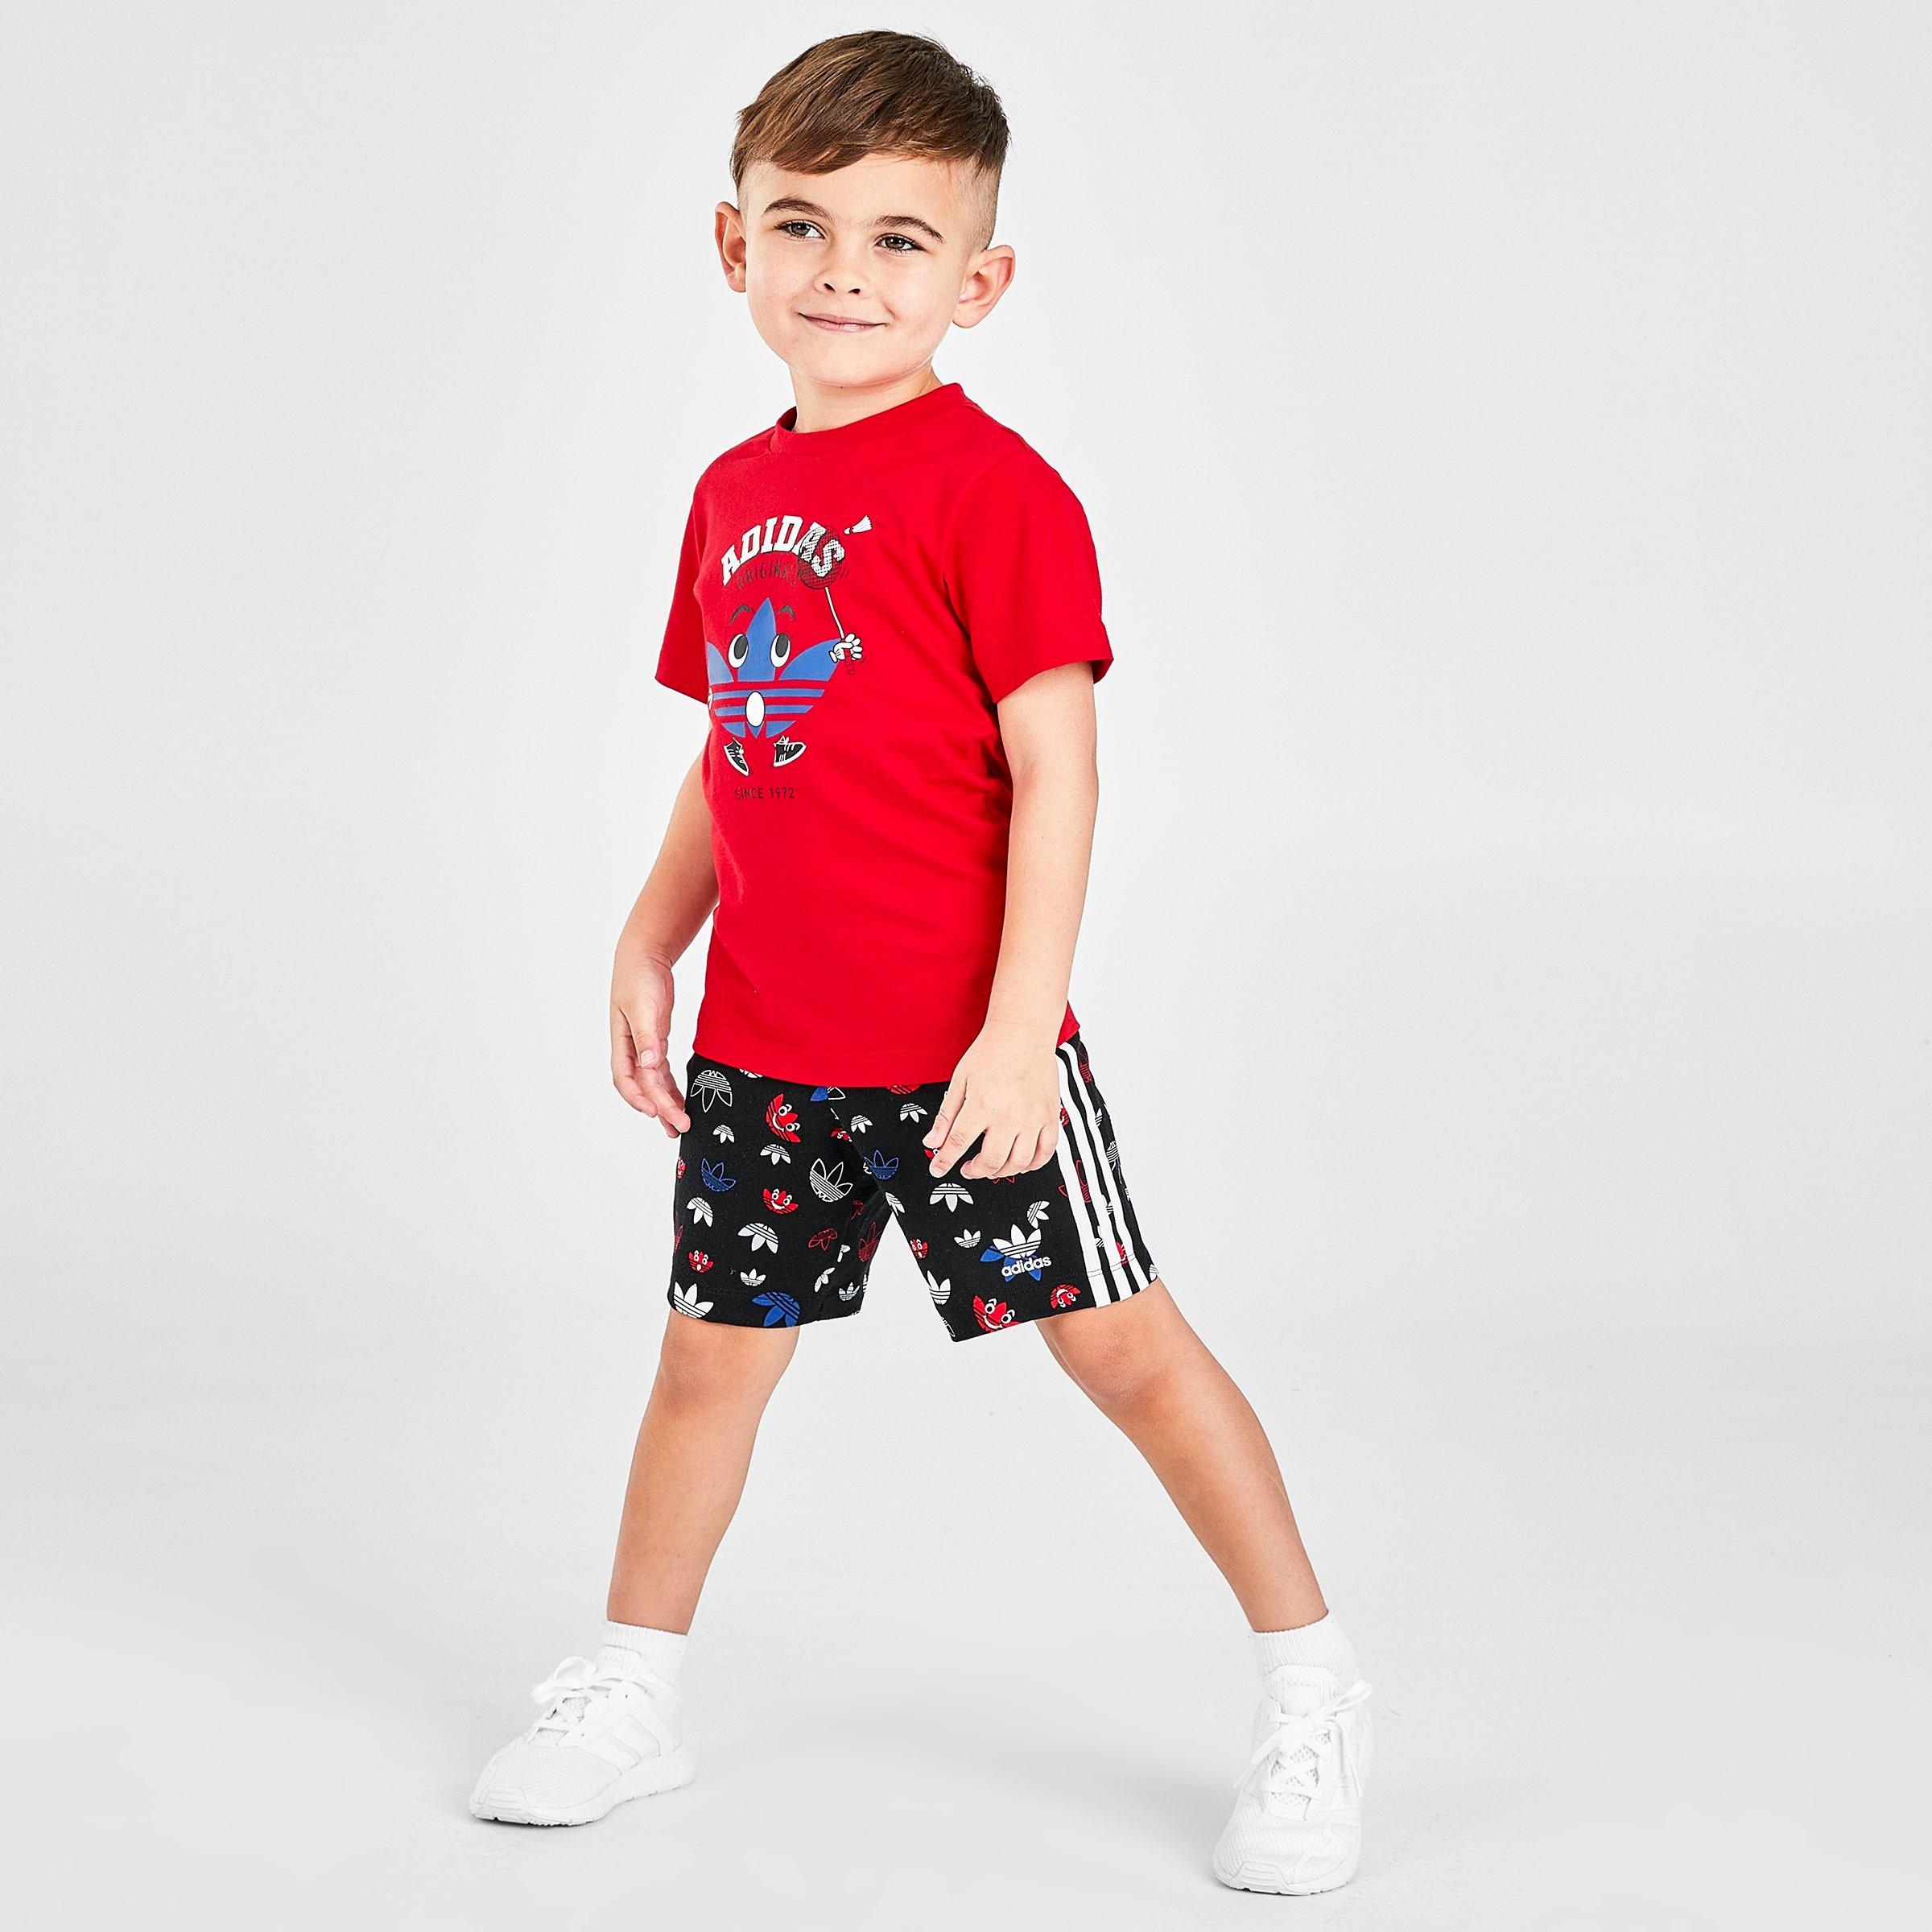 toddler adidas shorts and shirt